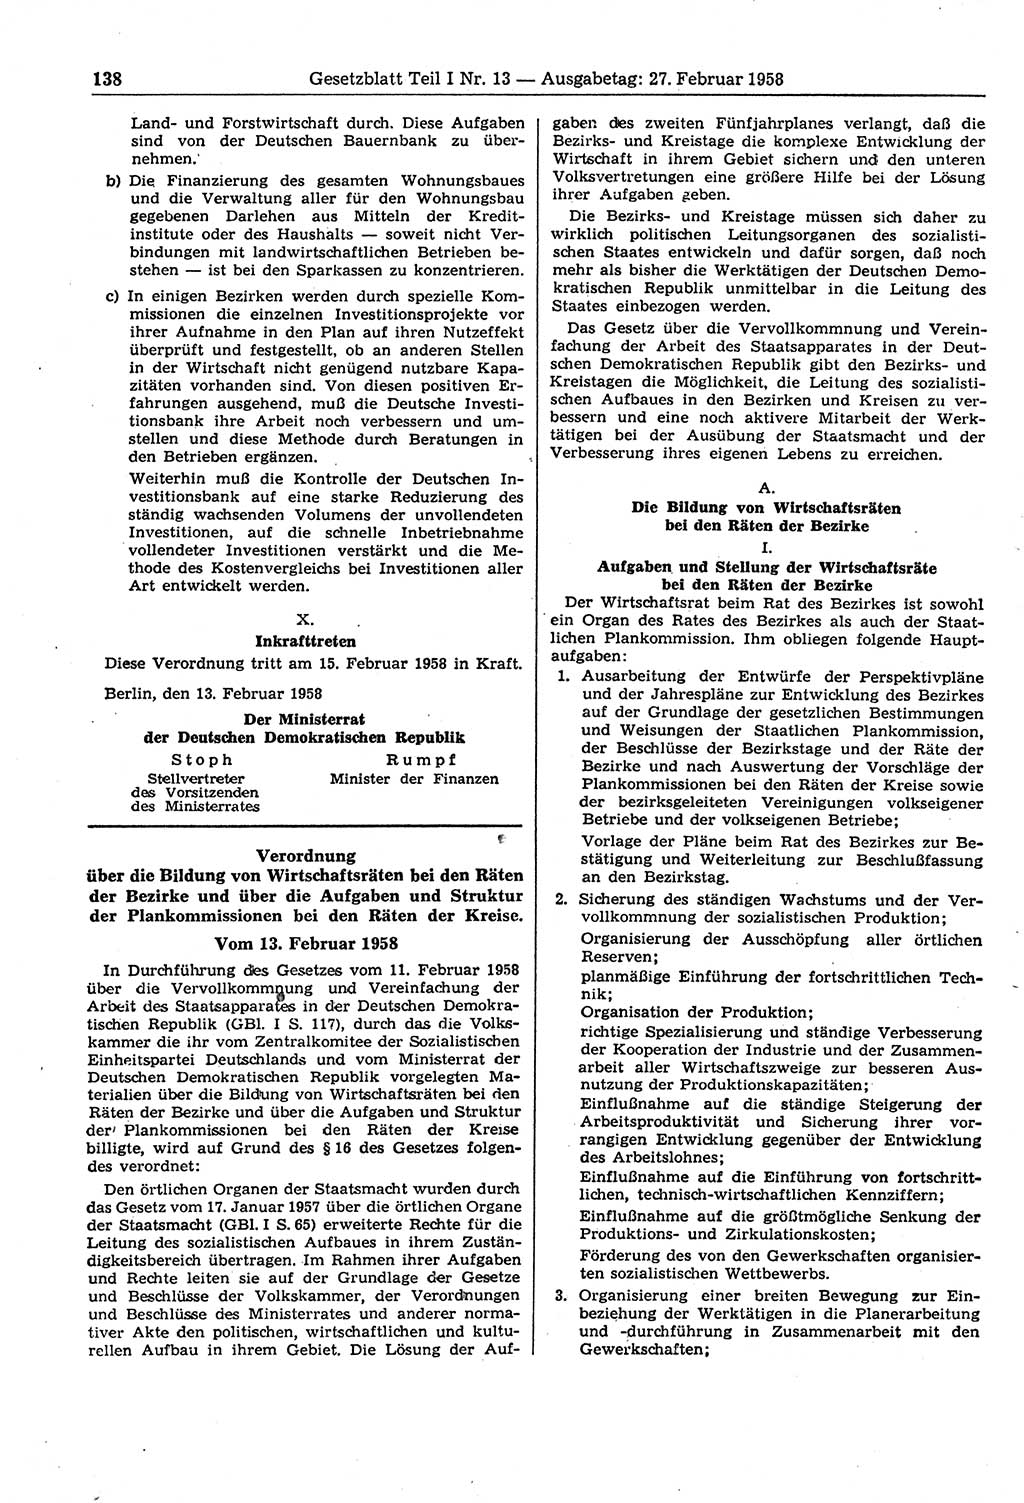 Gesetzblatt (GBl.) der Deutschen Demokratischen Republik (DDR) Teil Ⅰ 1958, Seite 138 (GBl. DDR Ⅰ 1958, S. 138)